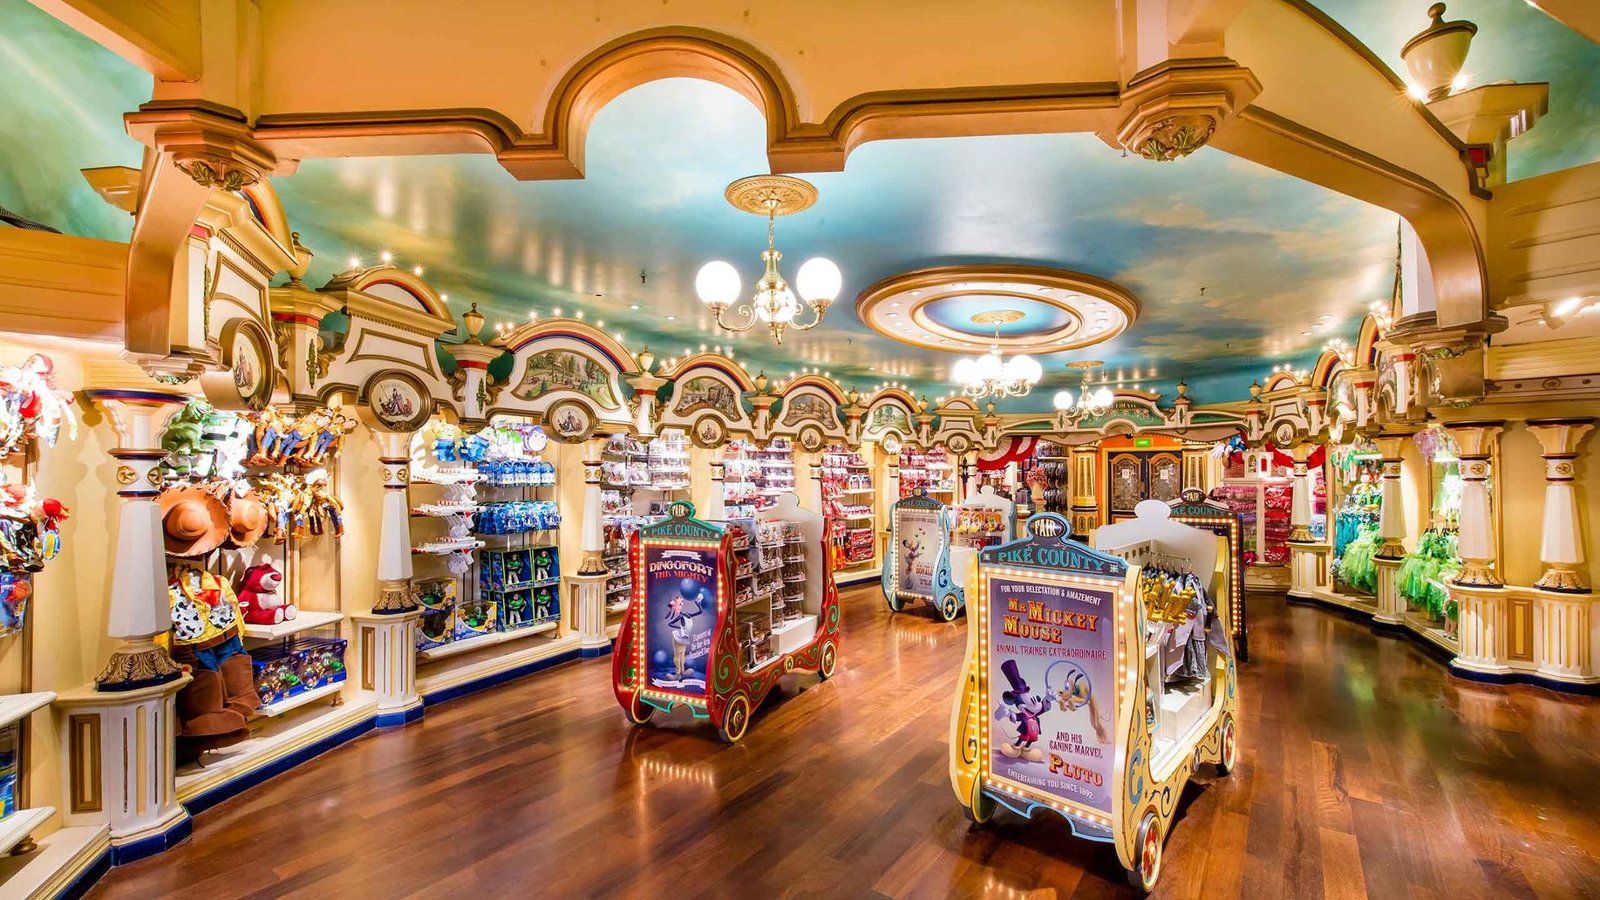 Disney's Walt Disney World est une destination magique qui transporte les visiteurs dans le monde enchanteur de Disney. Explorez les merveilles de Disneyland Paris et plongez-vous dans le charme fantaisiste de Disney &